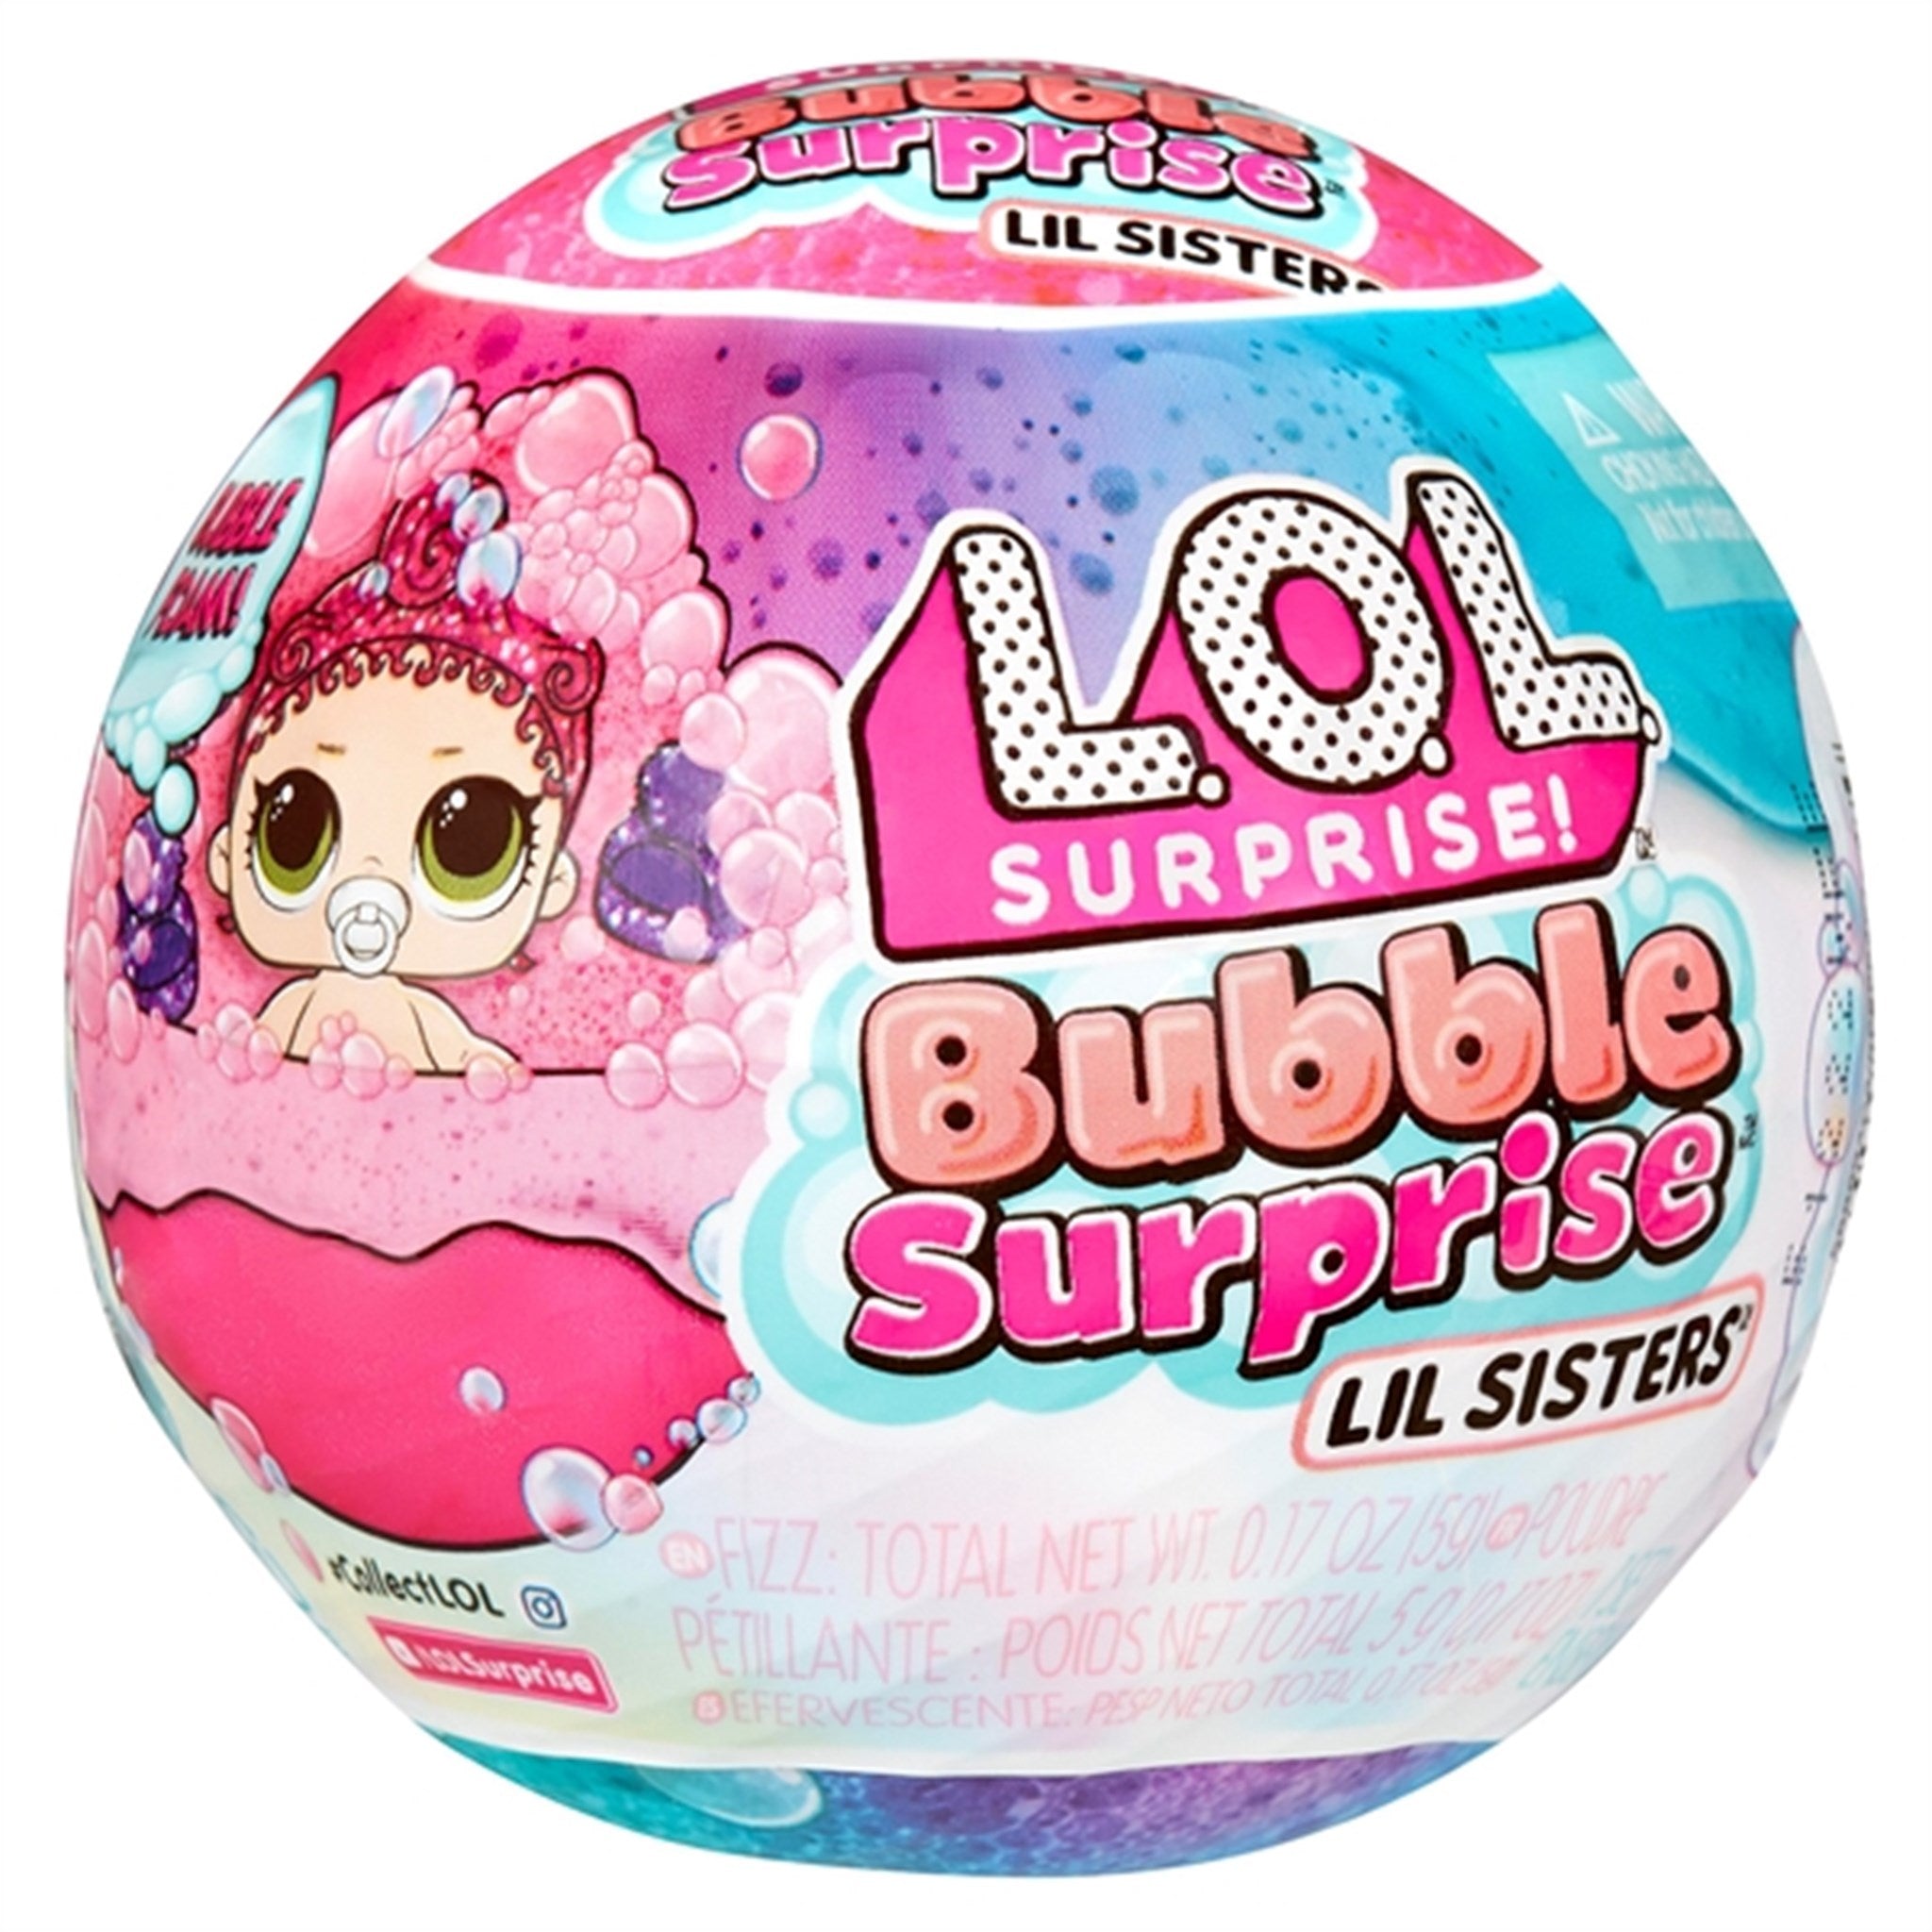 L.O.L. Surprise! Bubble Surprise LiL Sister